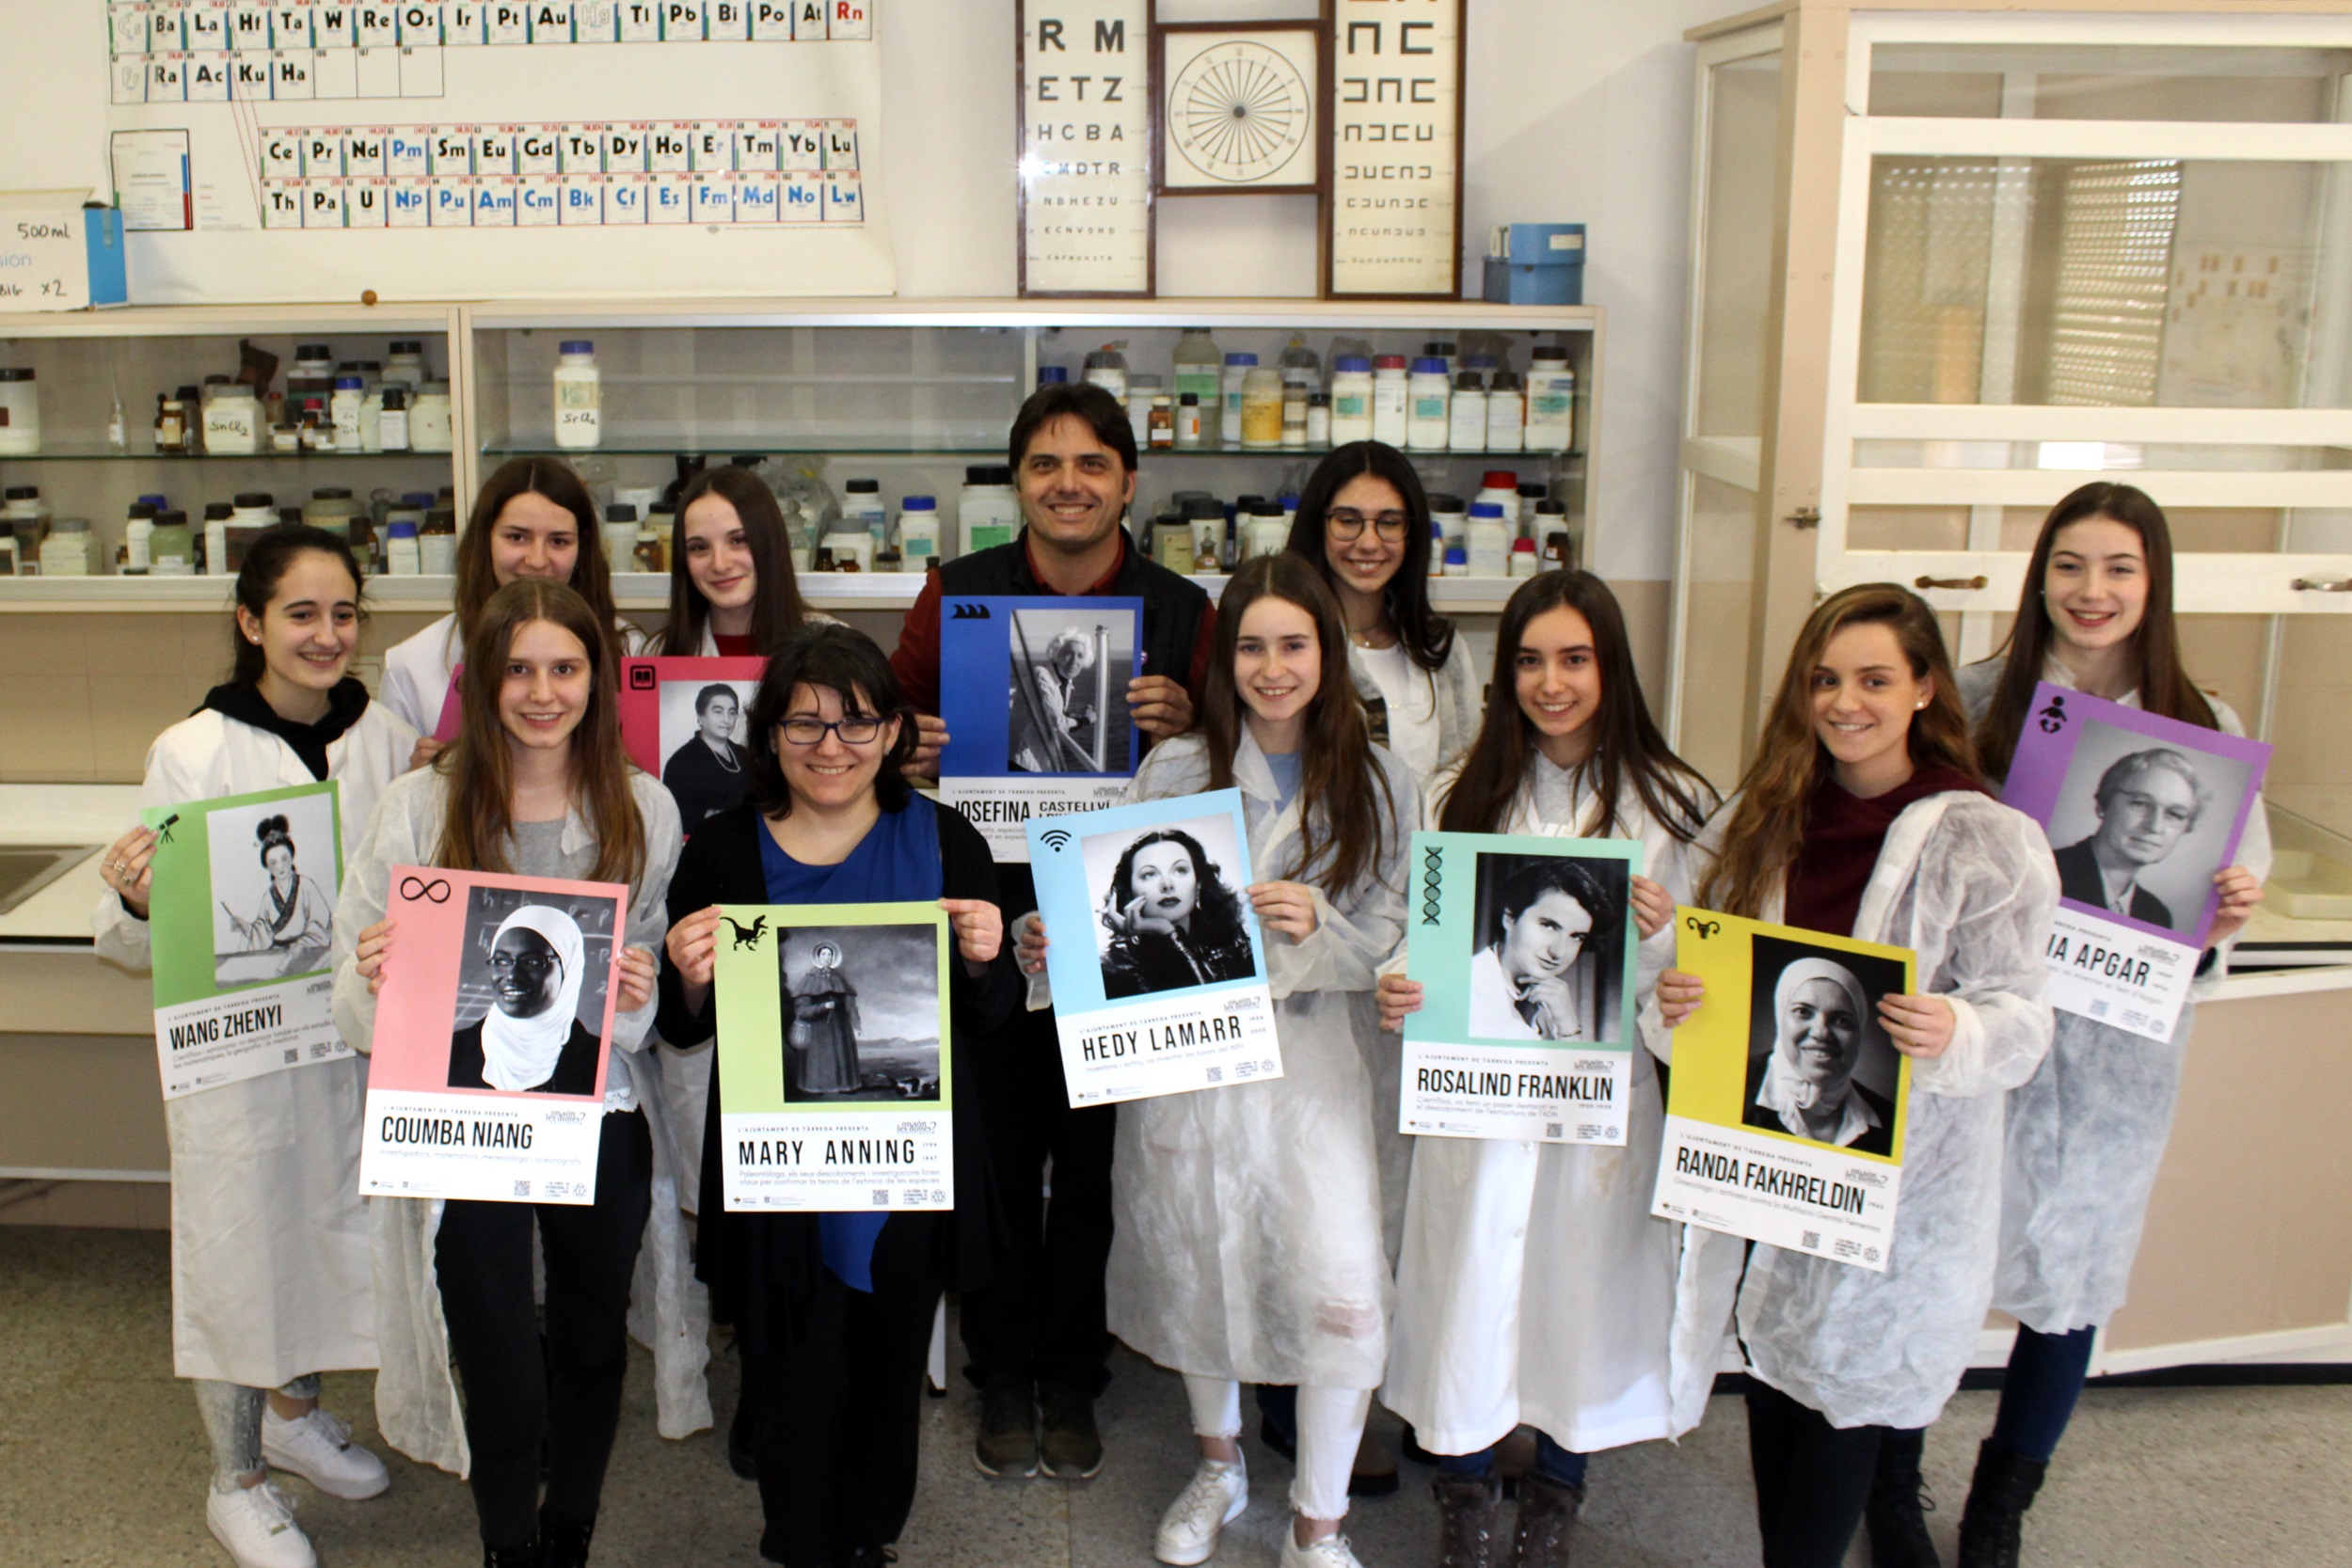 L’Ajuntament de Tàrrega impulsa una campanya per divulgar l’aportació de les dones en el món de la ciència